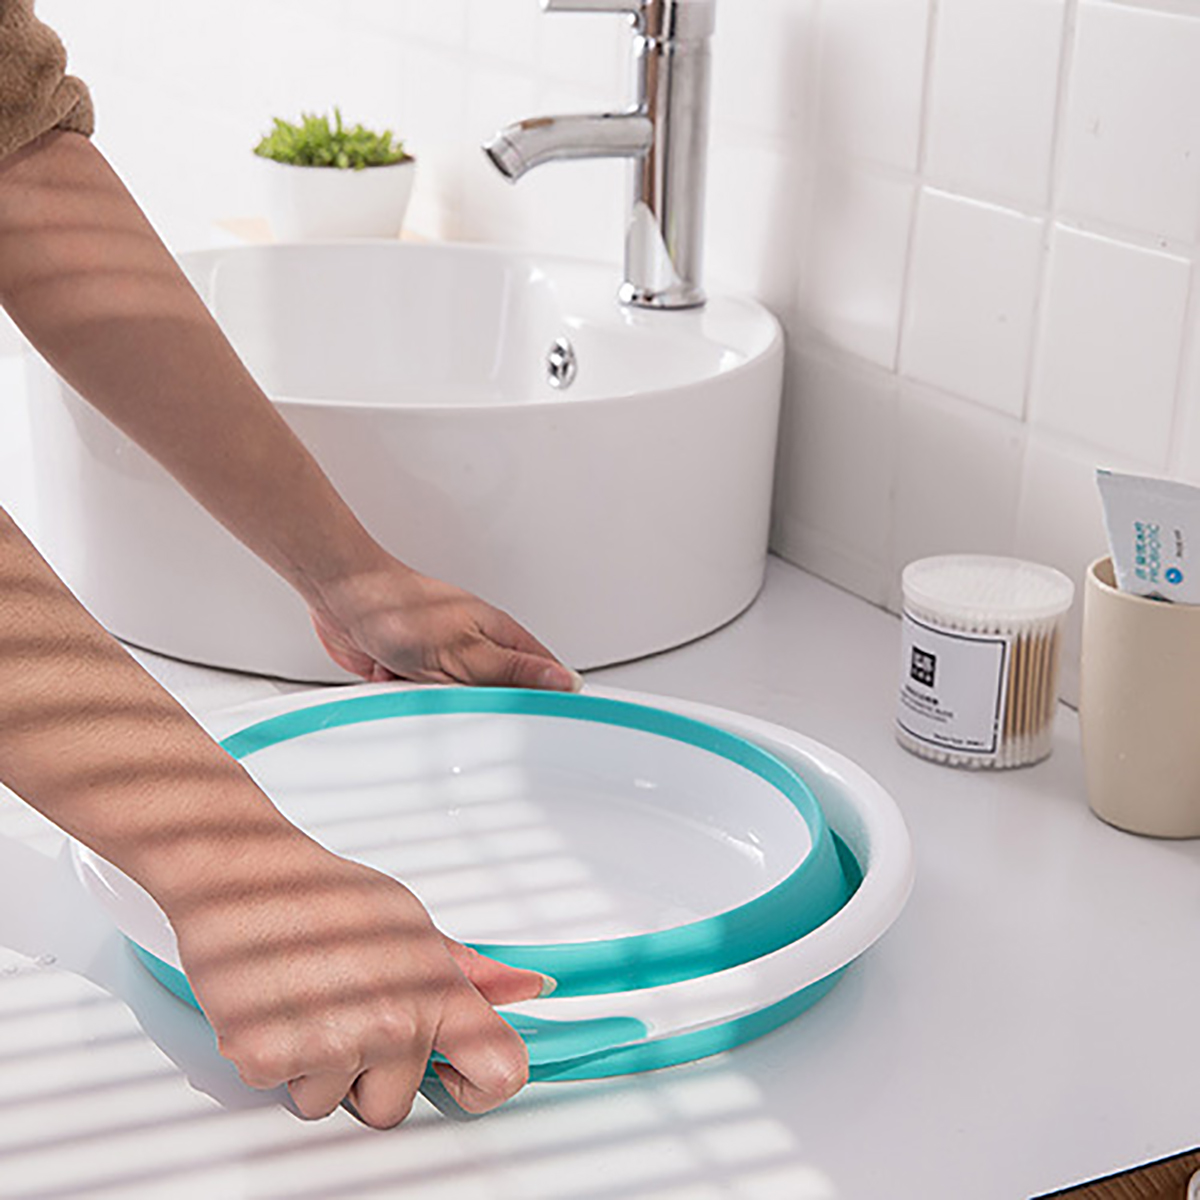 4-Size-Optional-Plastic-Foldable-Round-Dish-Tub-Portable-Hand-Feet-Washing-Basin-Space-Saving-Washtu-1748615-5